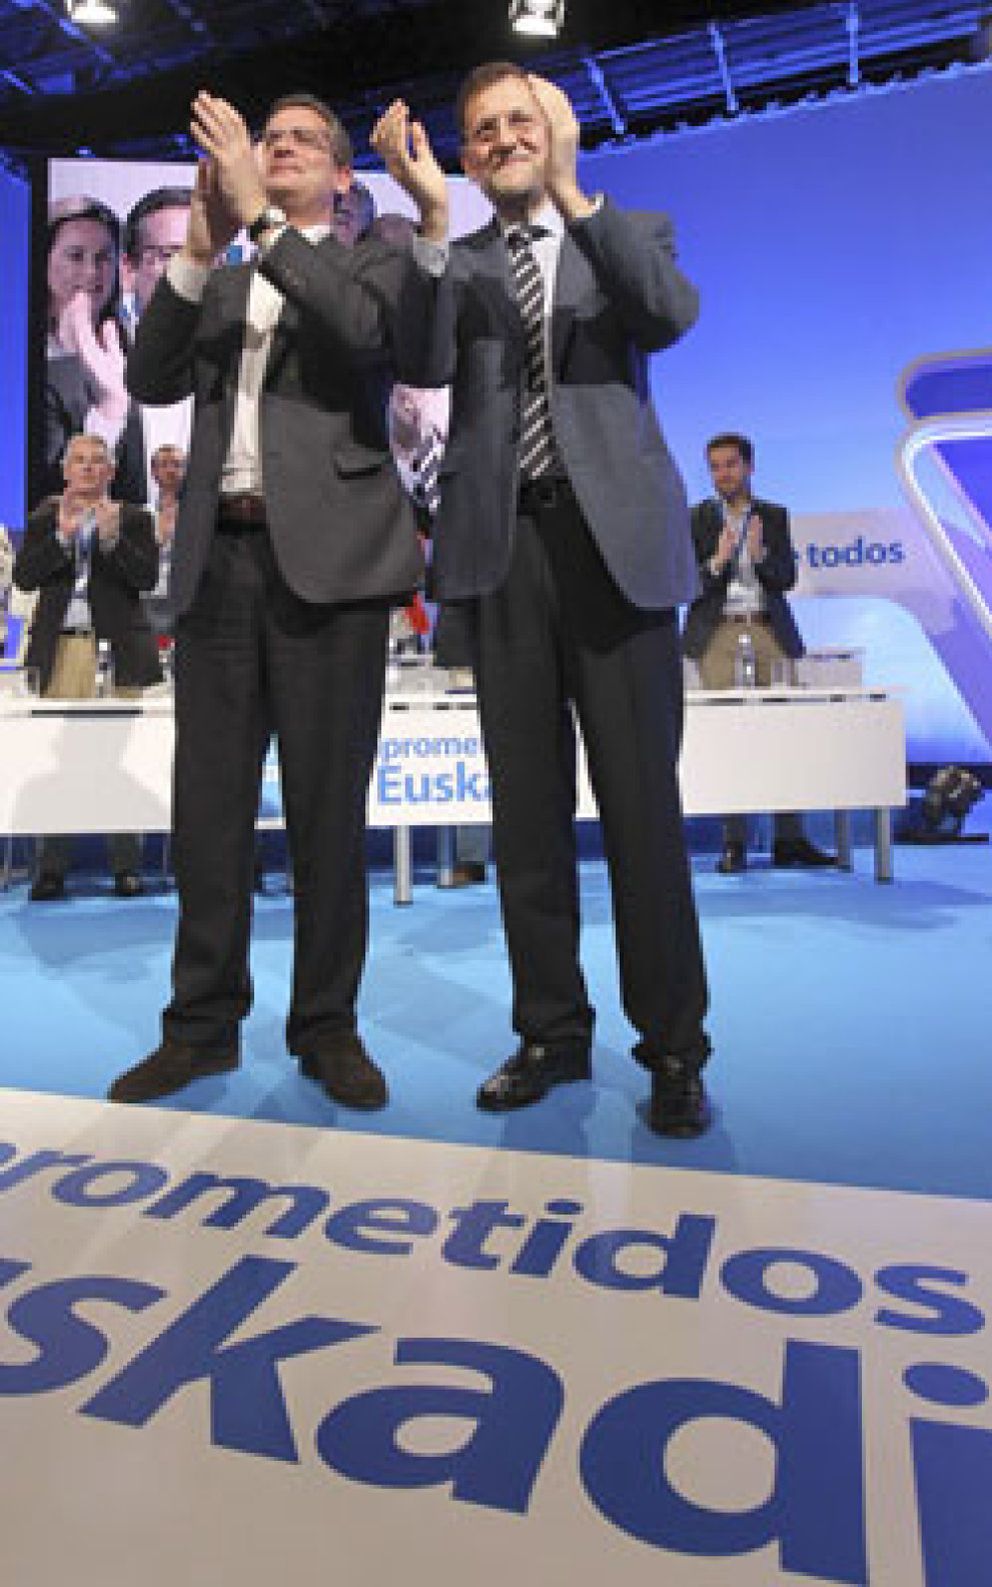 Foto: Rajoy exige a ETA la disolución: "Nunca he negociado con nadie"